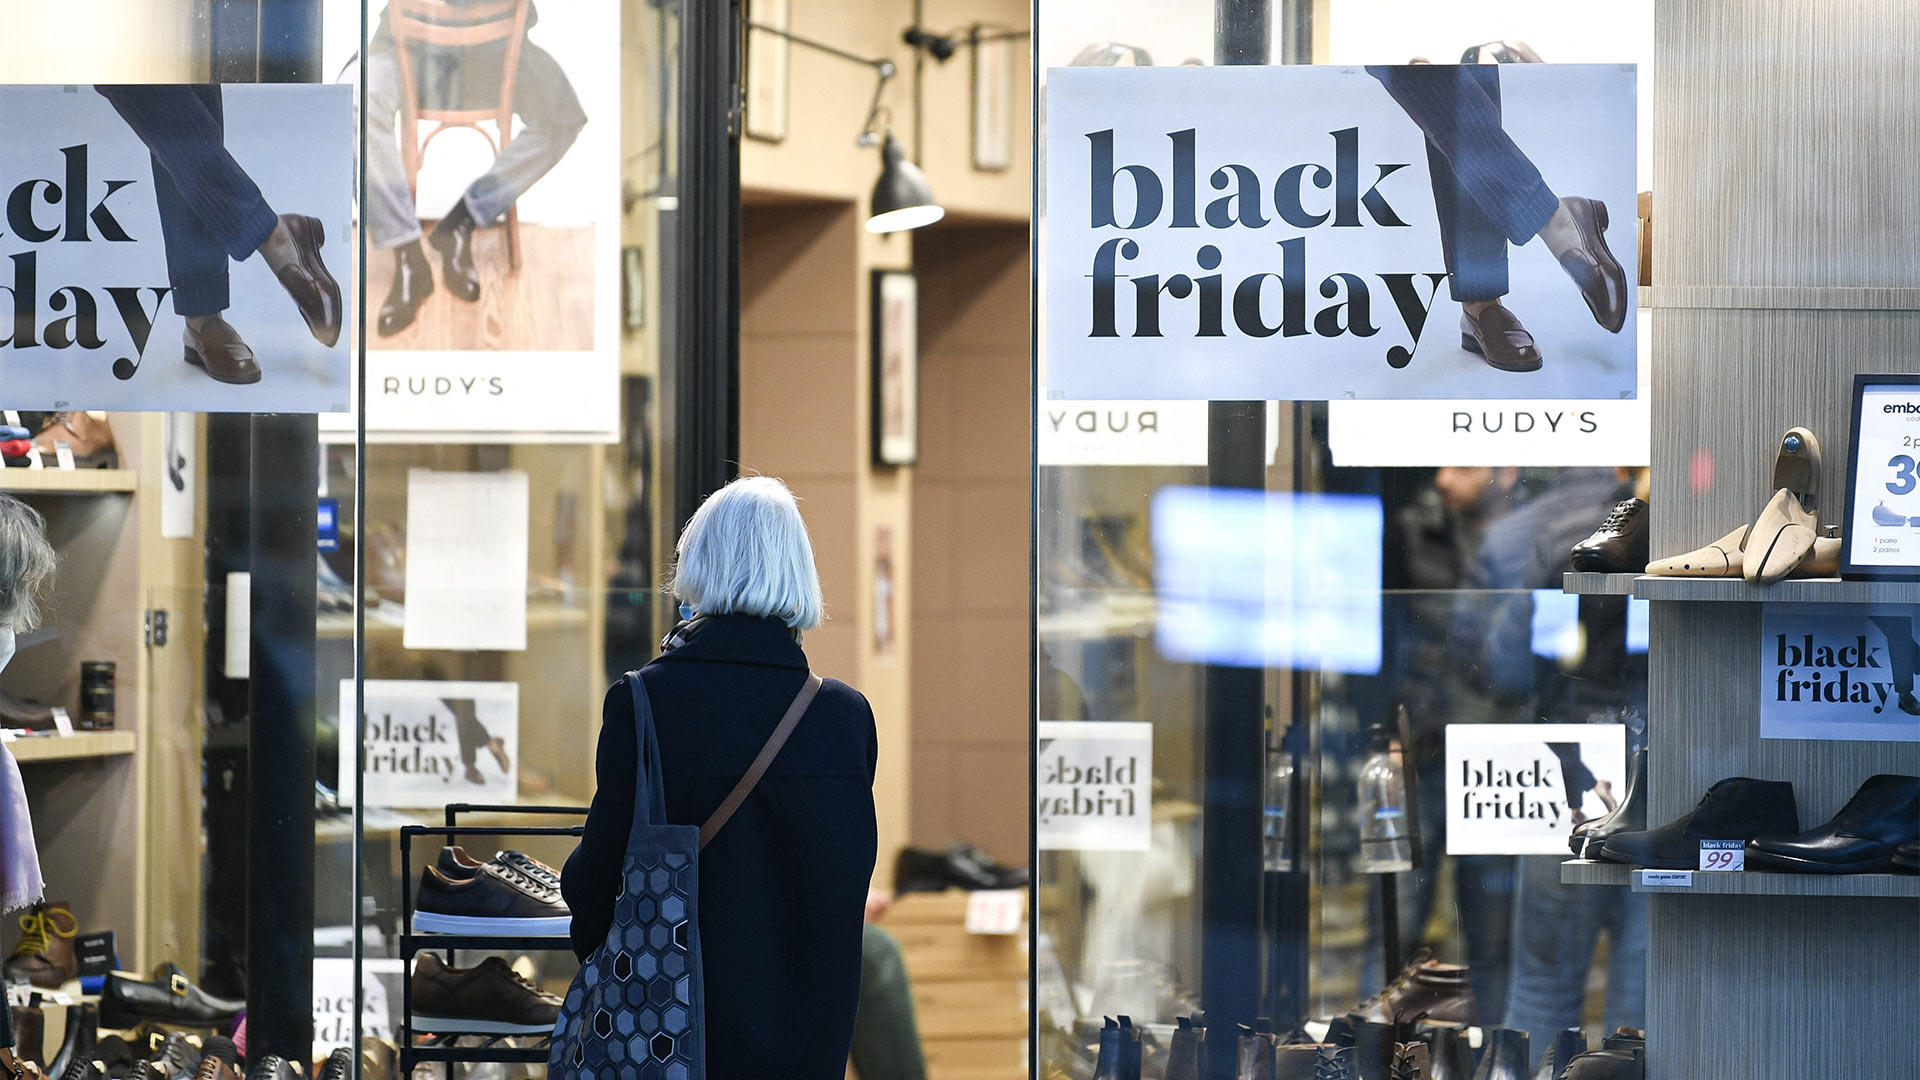 Black-Friday-Werbung in einem Schaufenster | picture alliance / abaca